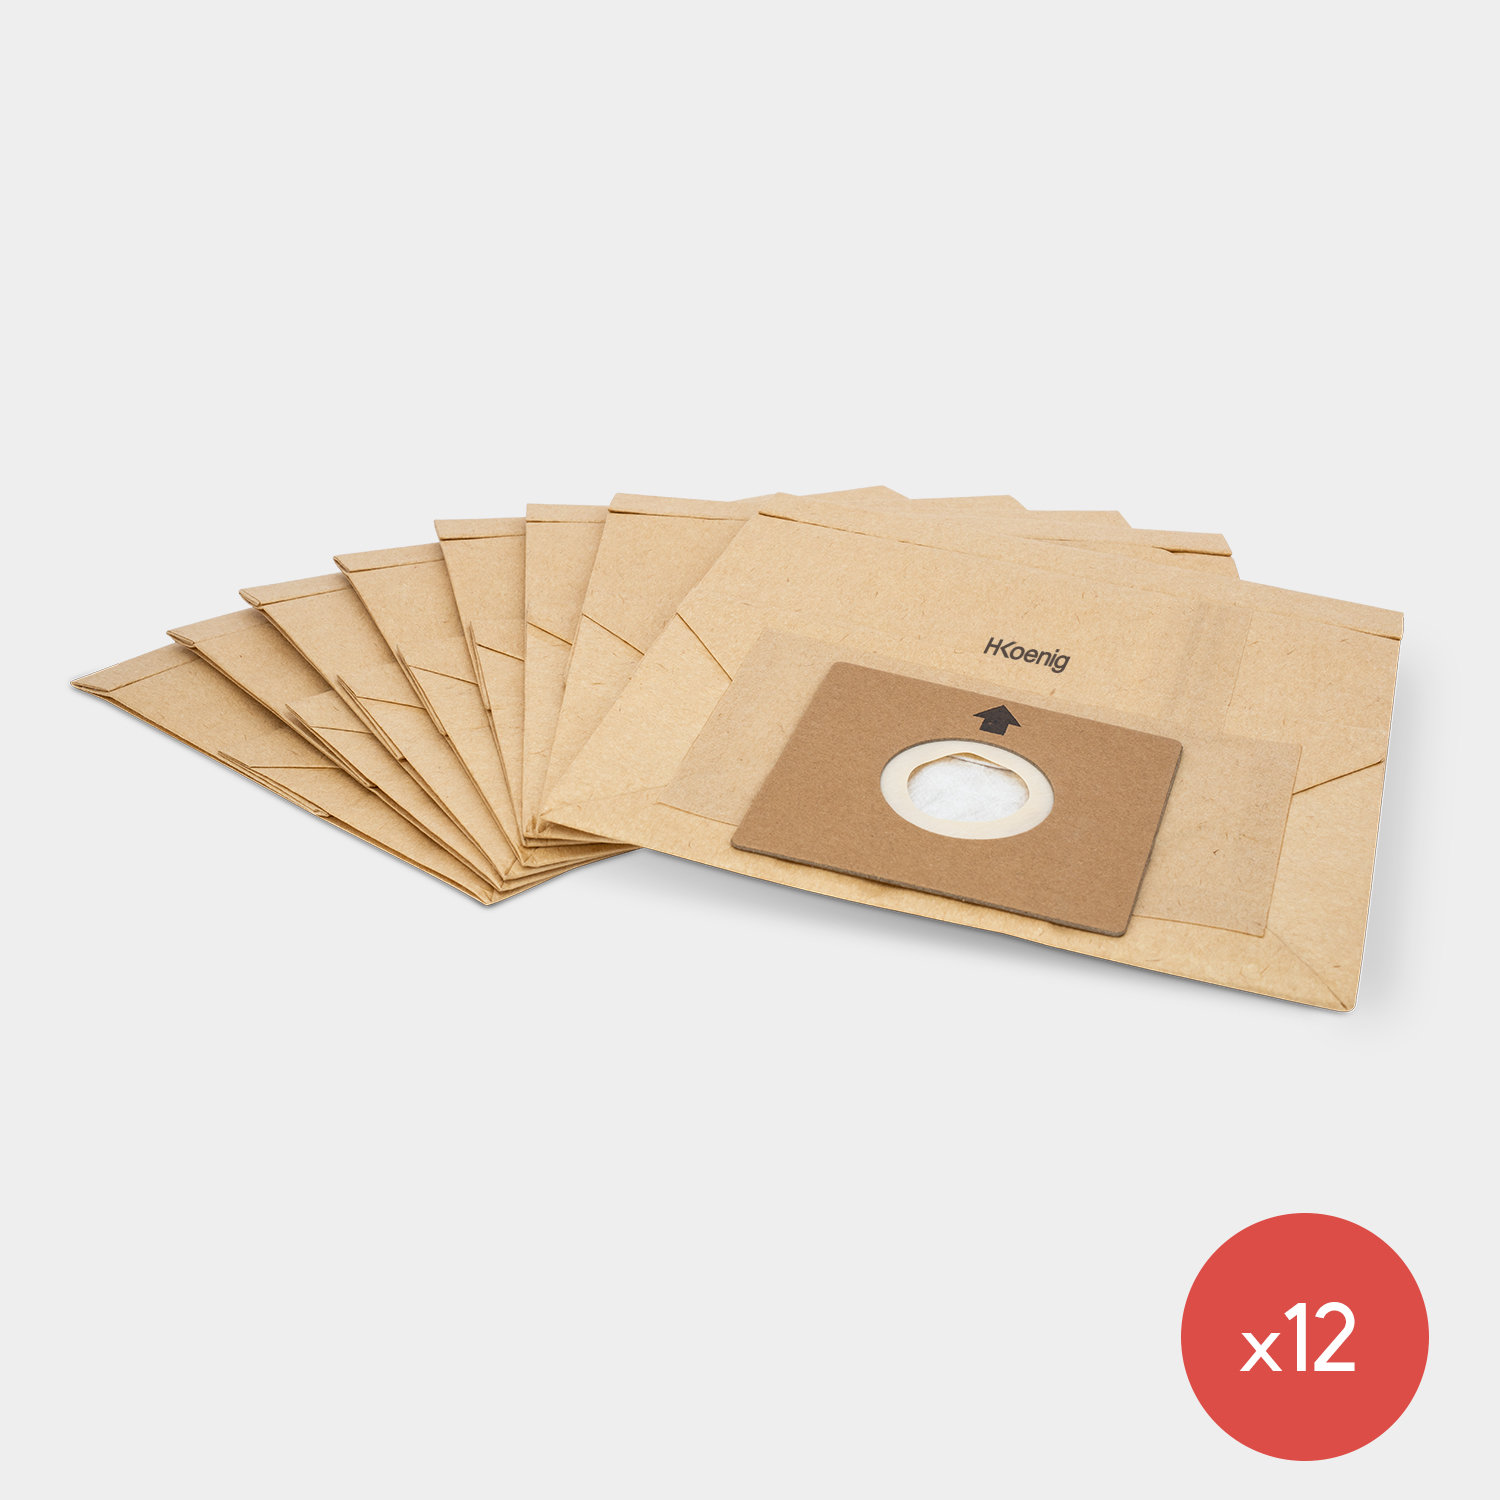 image 12 bolsas de papel para los aspiradores AXO700 y AXO800